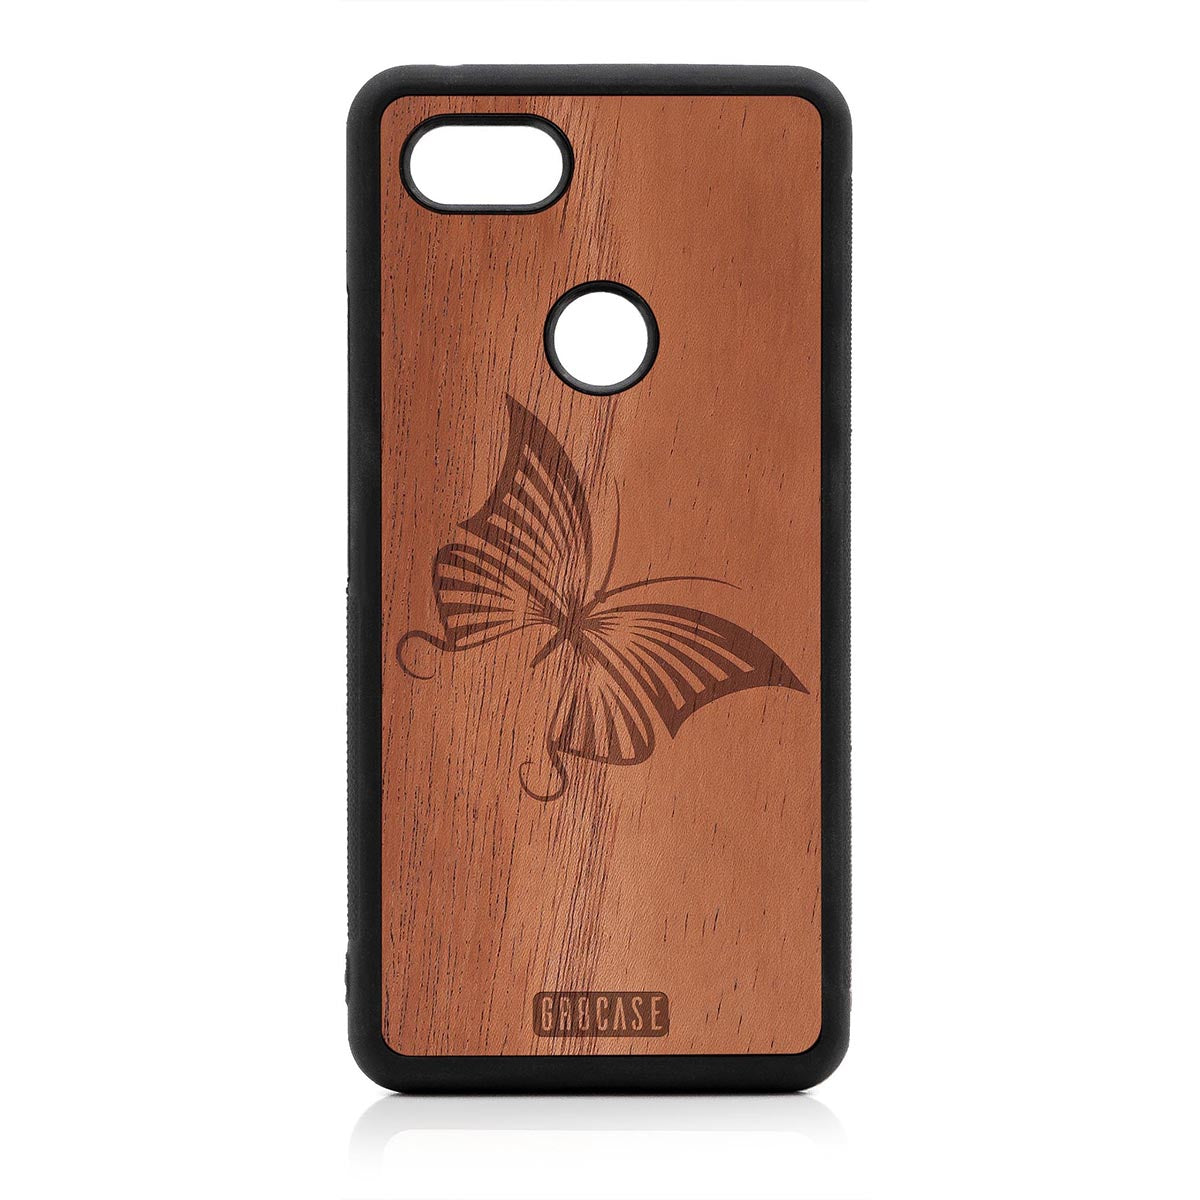 Butterfly Design Wood Case Google Pixel 3 XL by GR8CASE